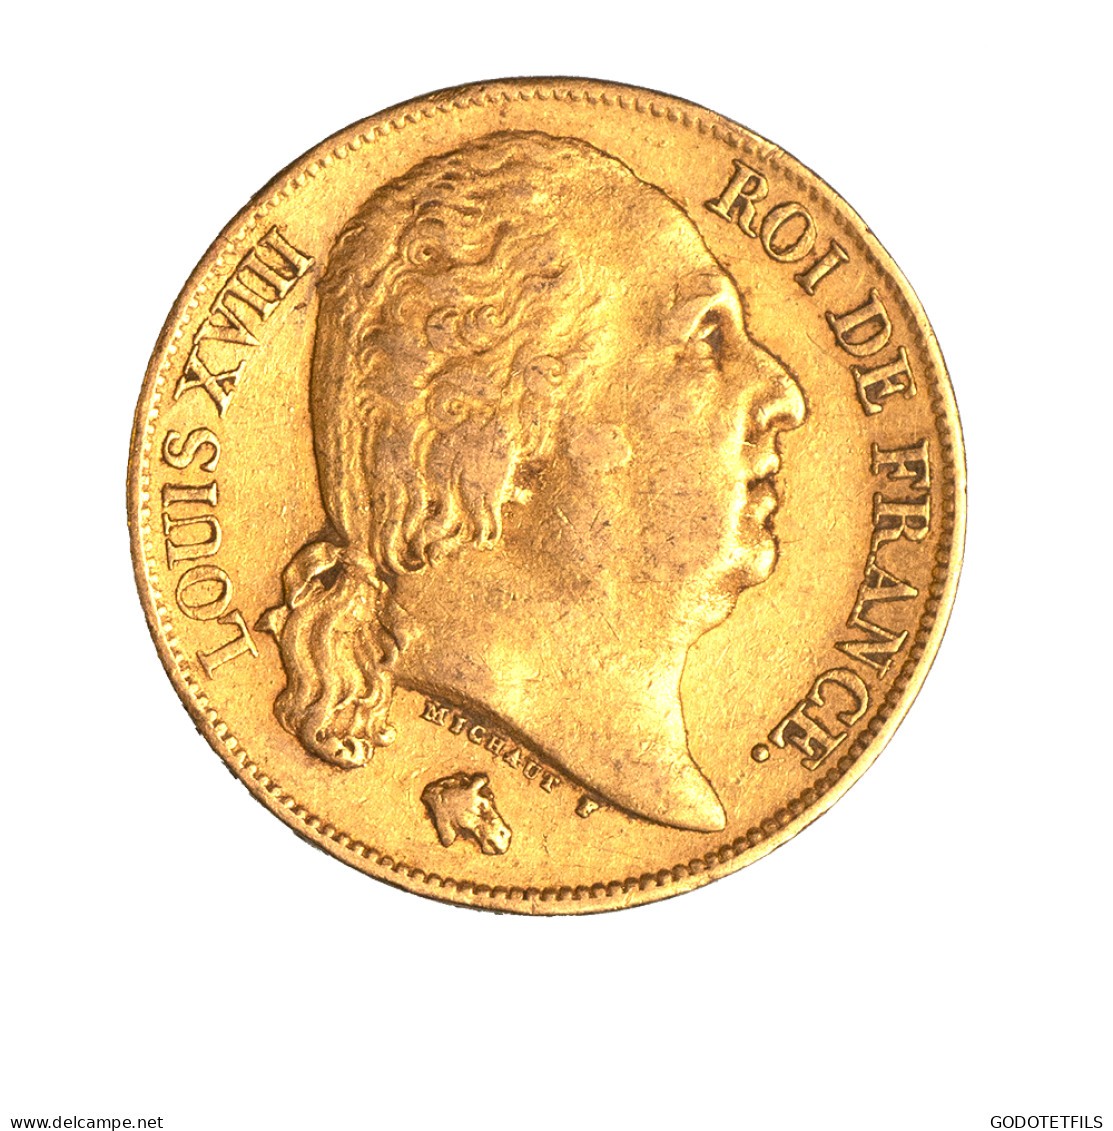 Louis XVIII-20 Francs 1820 Paris - 20 Francs (or)